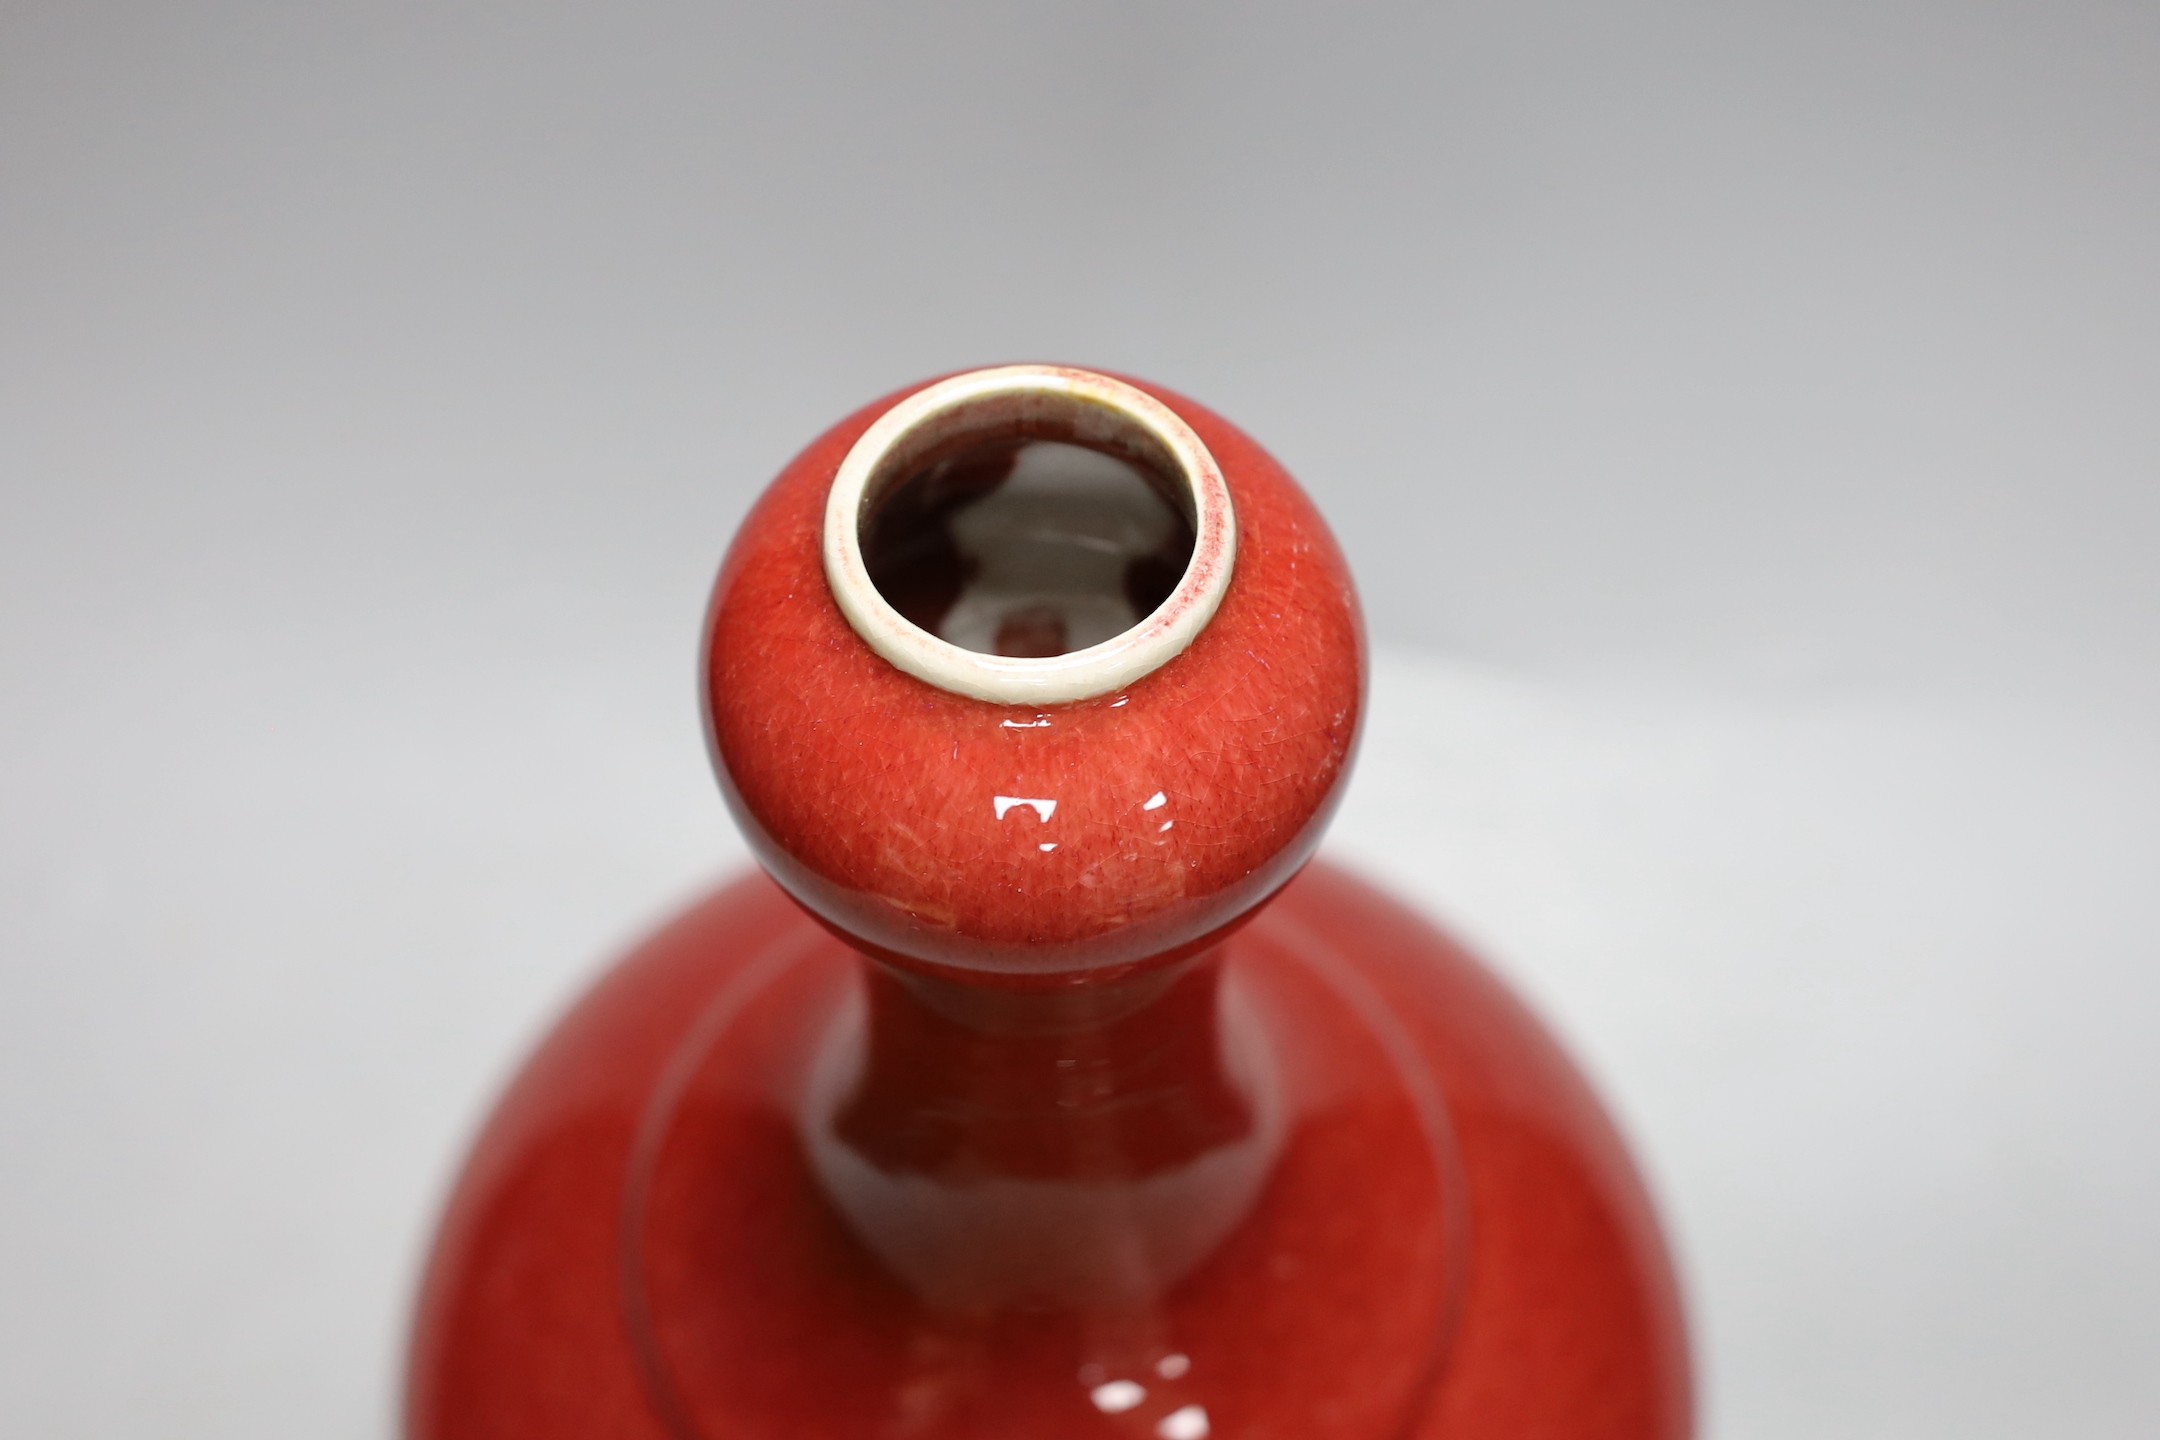 A Chinese sang-de-boeuf garlic-neck vase, 33cm